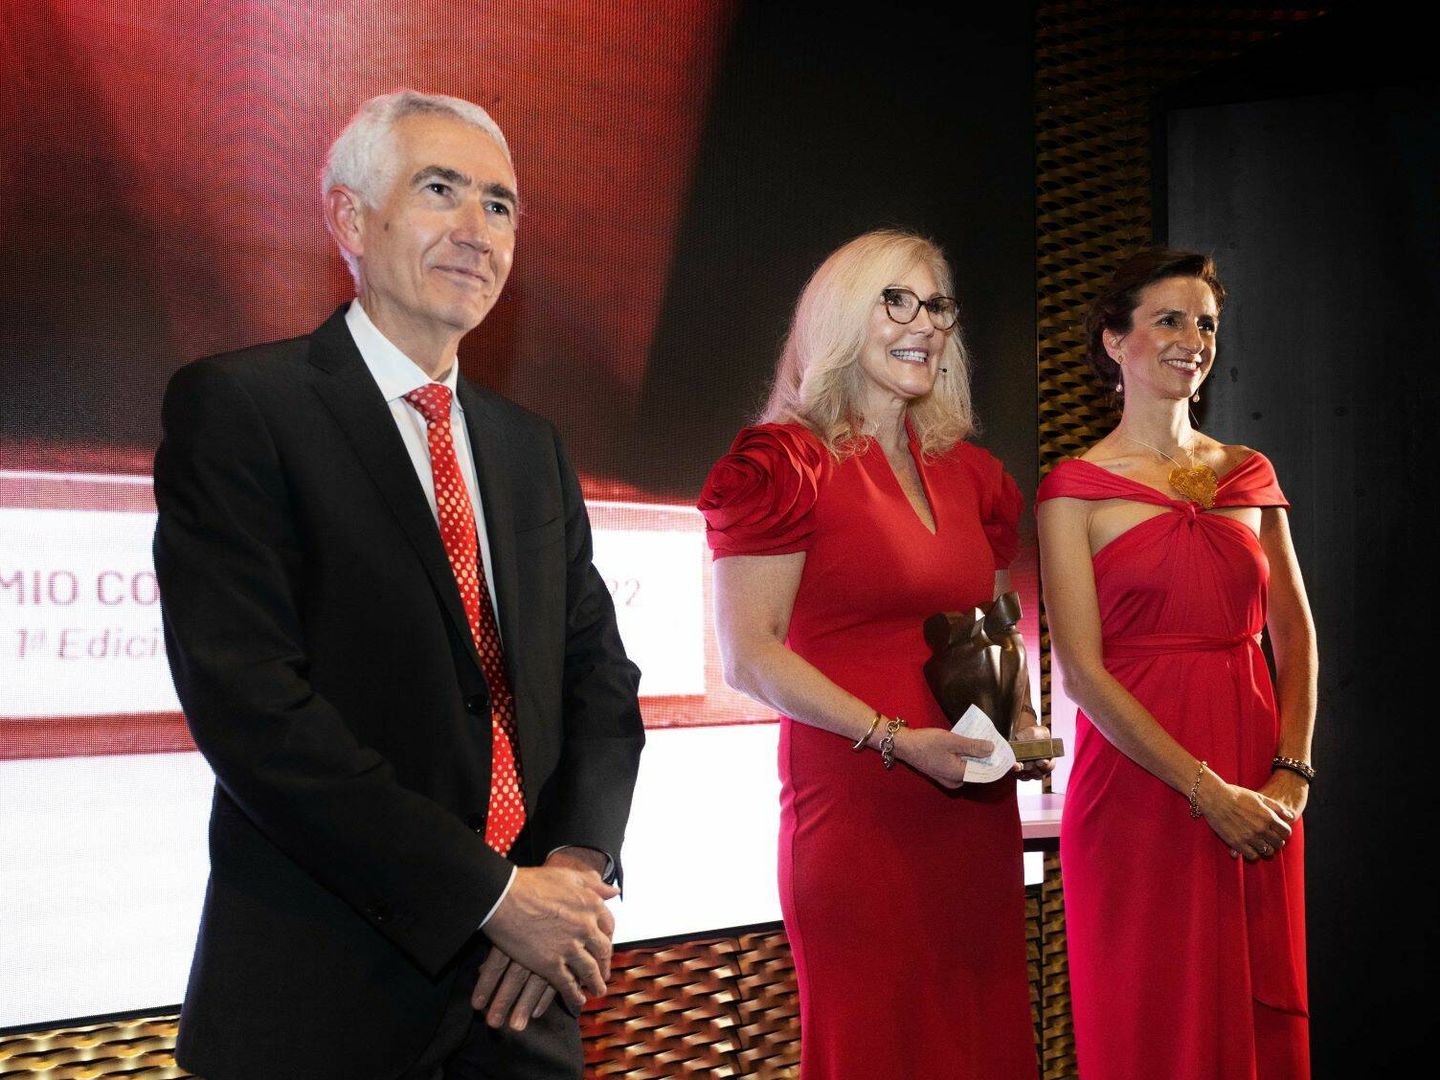 La doctora Malissa Wood con el primer premio Corazón de Mujer, junto a los cardiólogos Luis Rodríguez Padial y Leticia Fernández-Friera